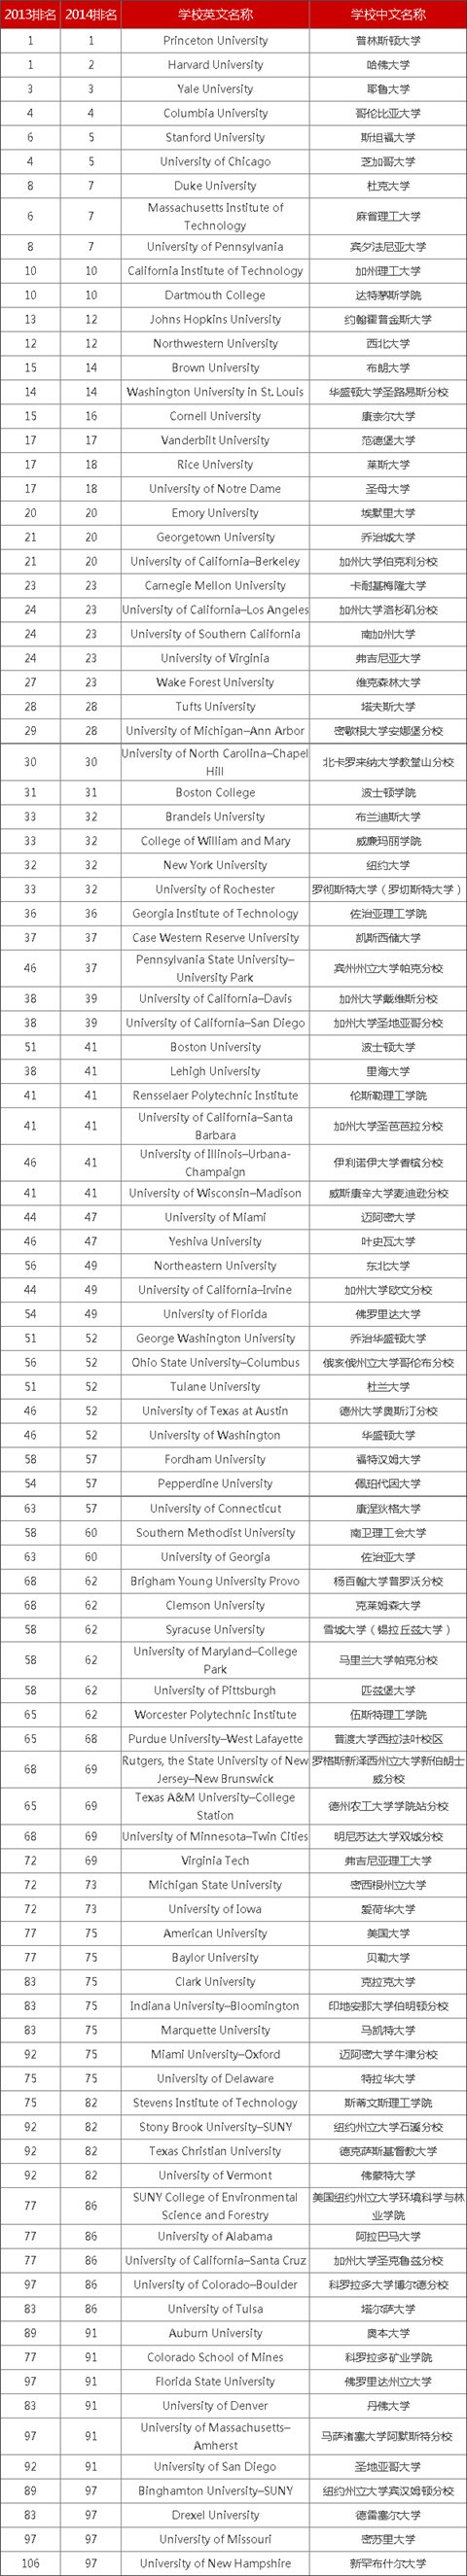 2014美国大学综合排行榜